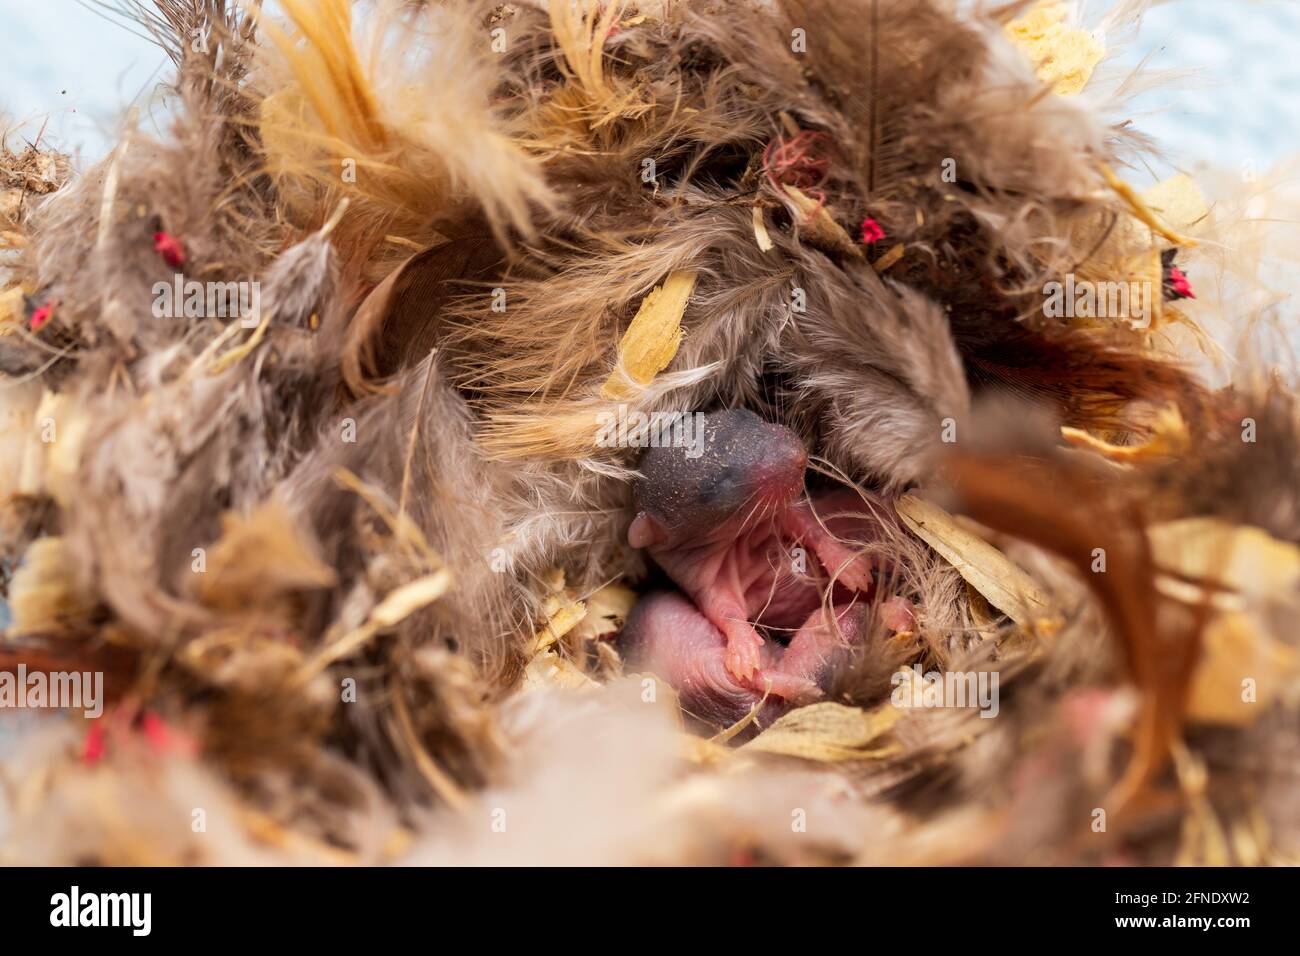 Junge Maus, Mus musculus, im Nest aus Federn und anderen Materialien. Stockfoto